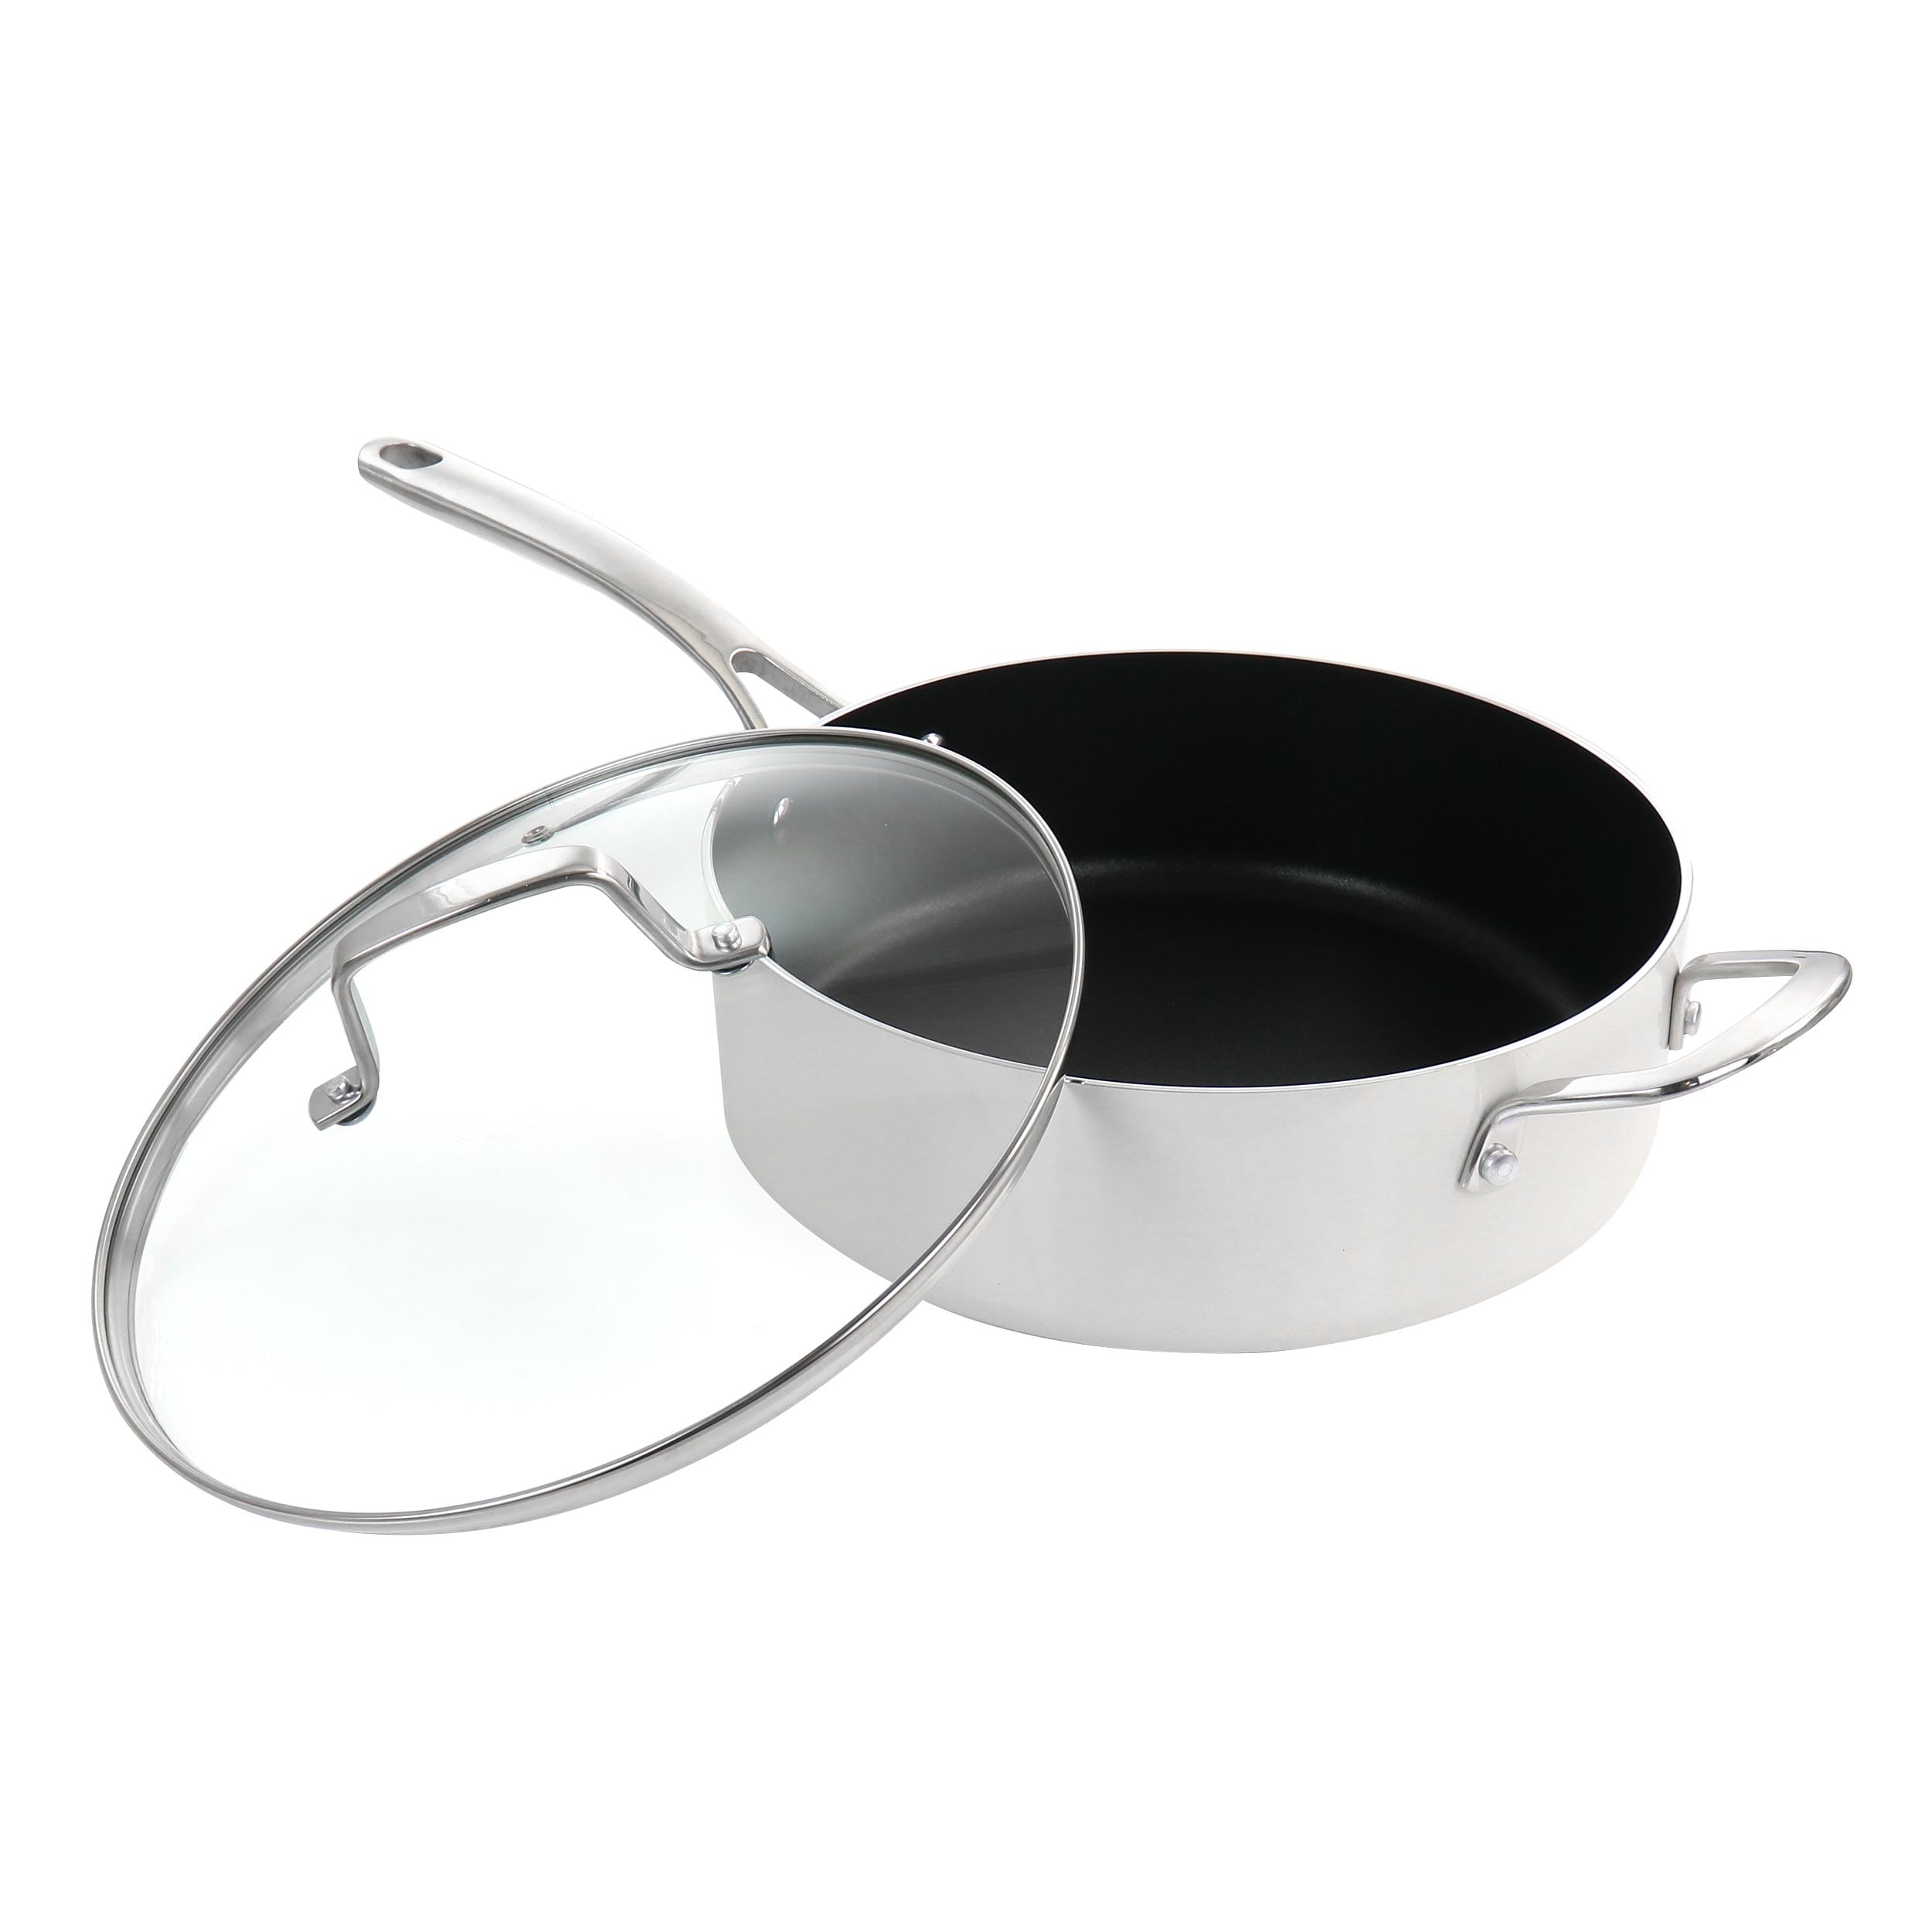 NEW Martha Stewart SIGNATURE 10 piece nonstick cookware set White Linen  Teflon!!